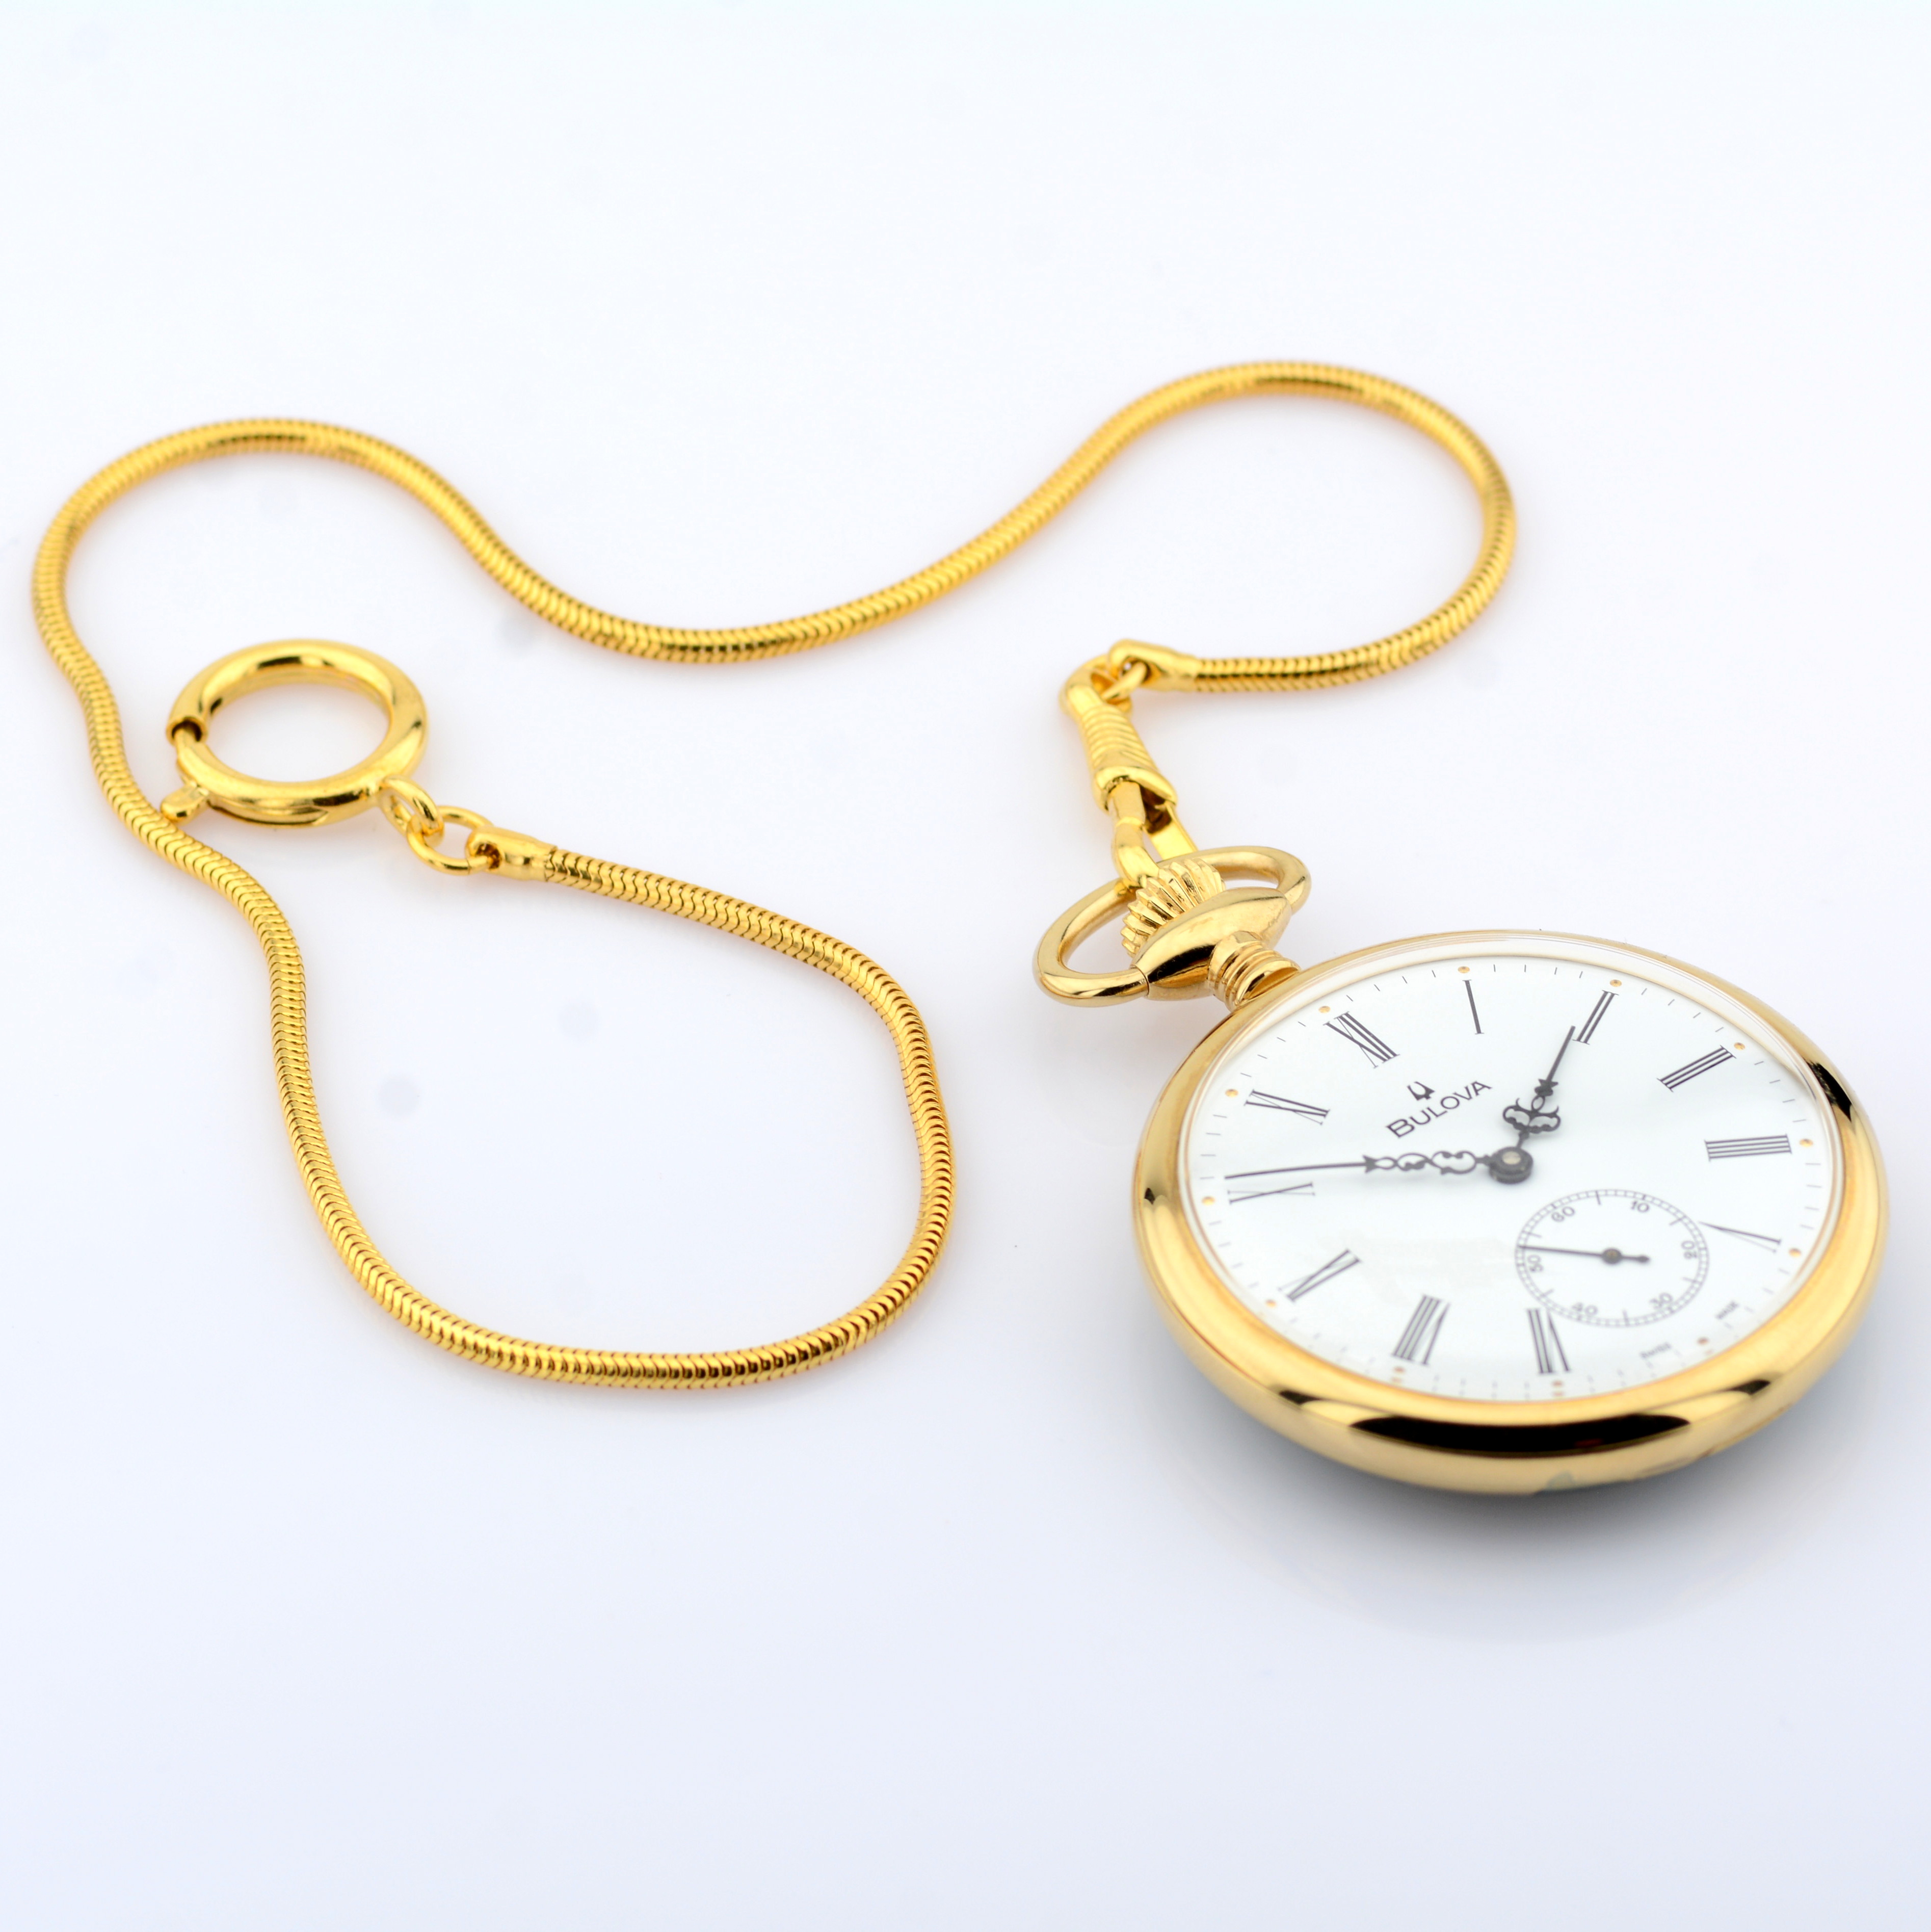 Bulova / Pocket Watch - Gentlmen's Gold/Steel Wrist Watch - Image 2 of 9